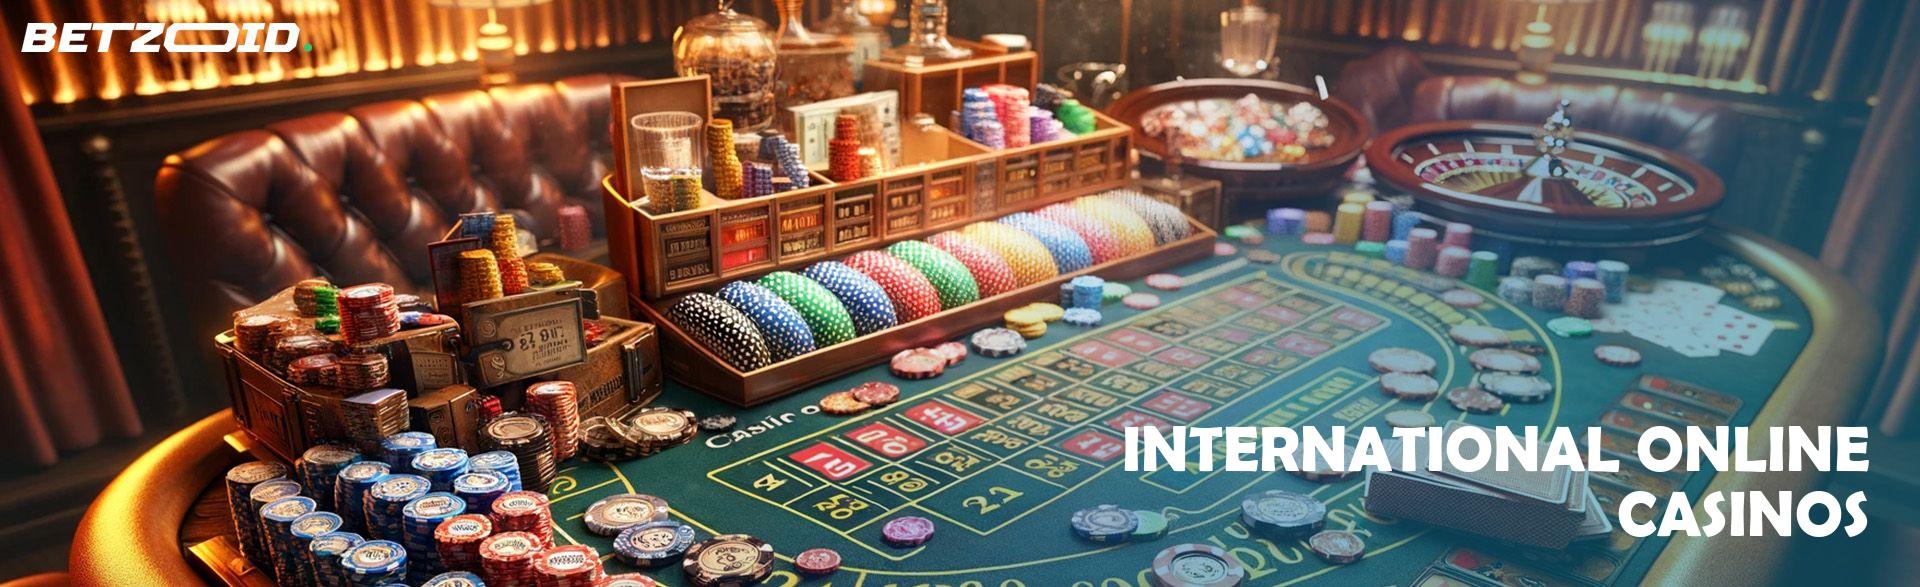 International Online Casinos.